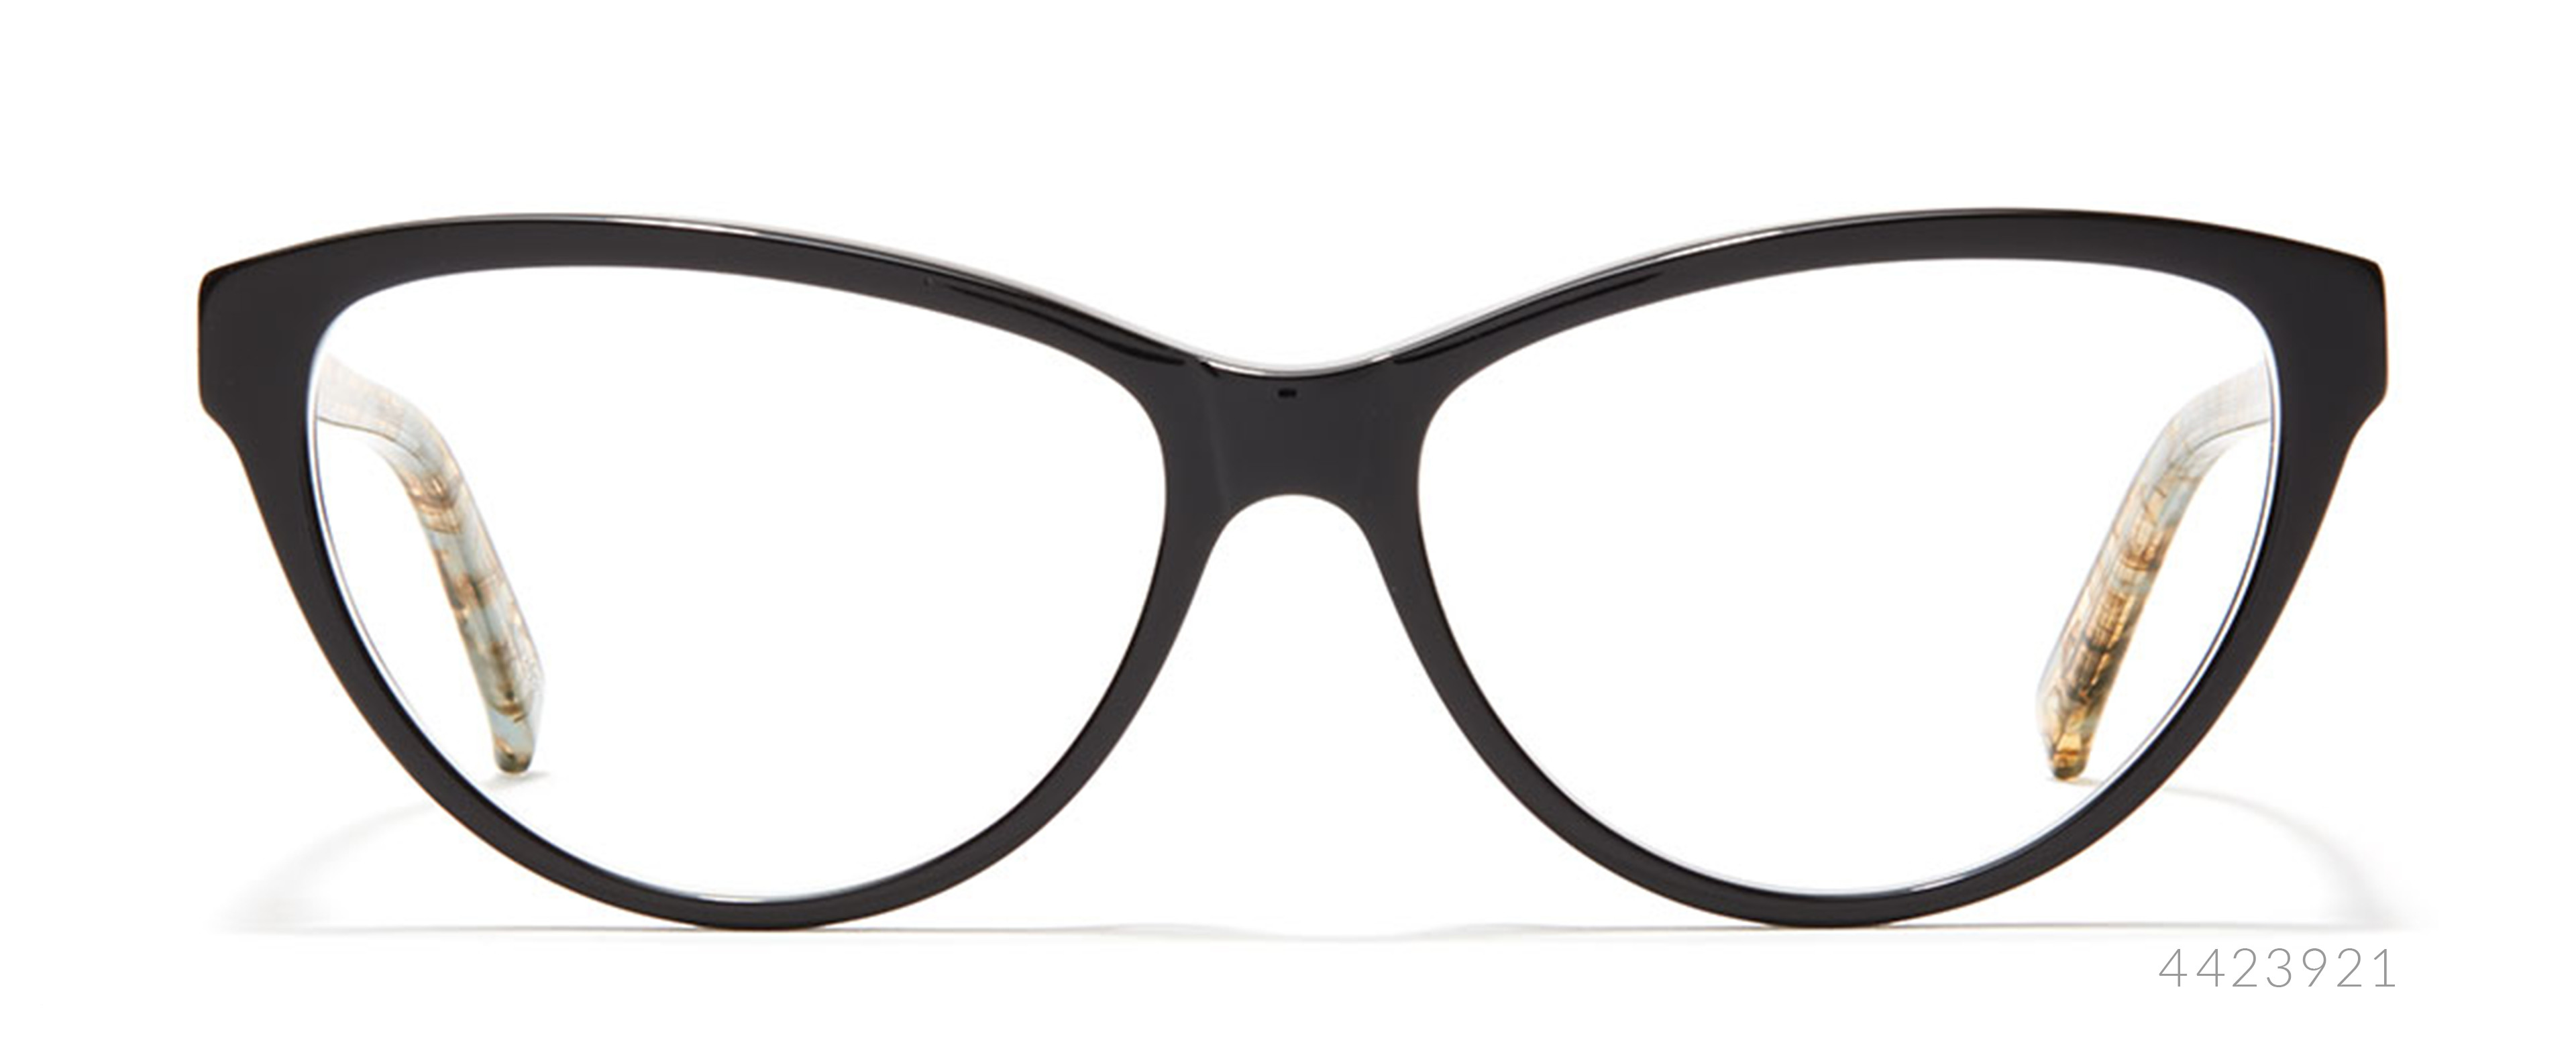 stylish cat eye glasses